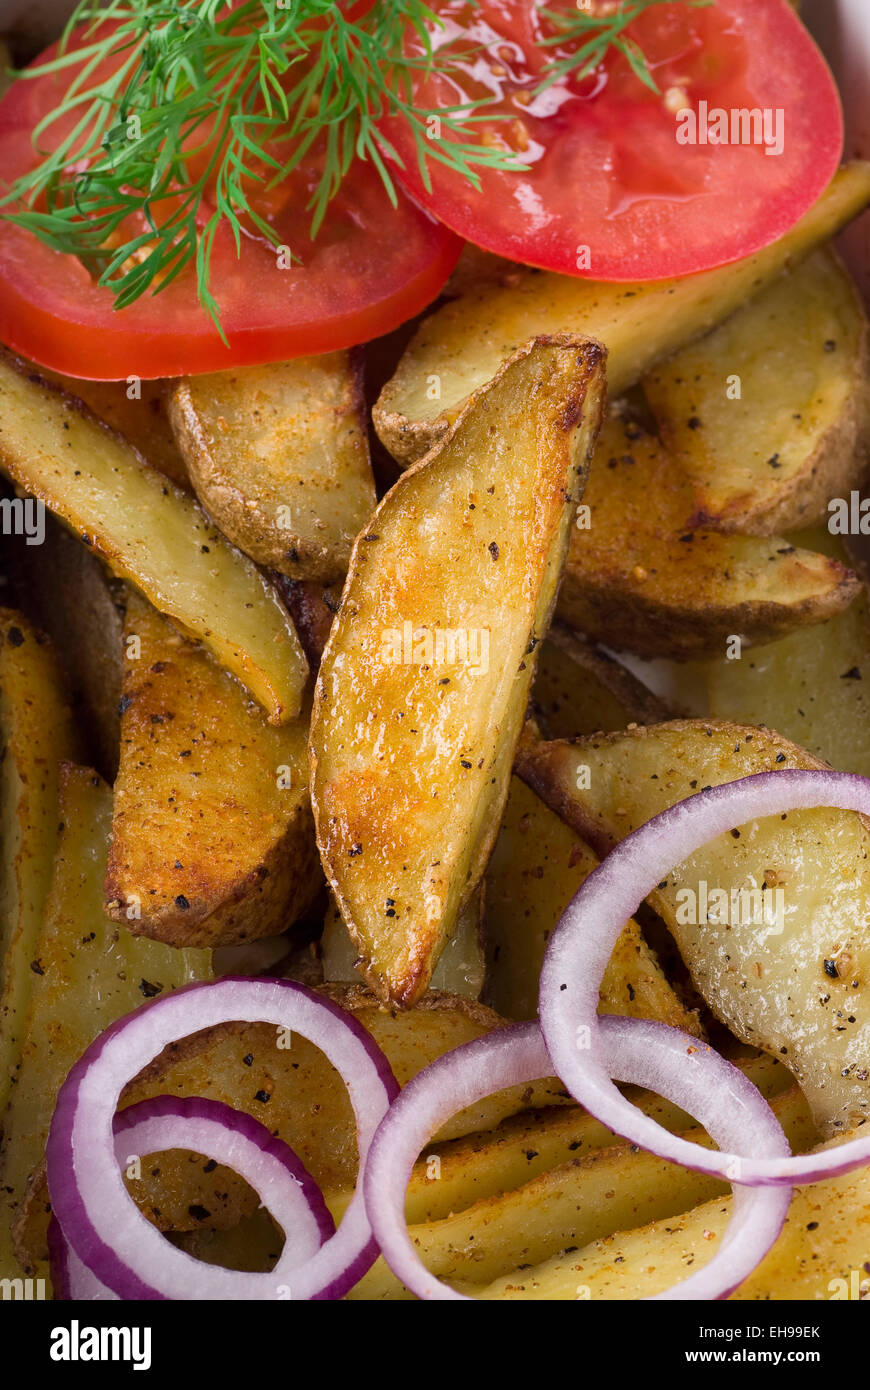 Roasted potato wedges, spanish onion and tomato. Stock Photo